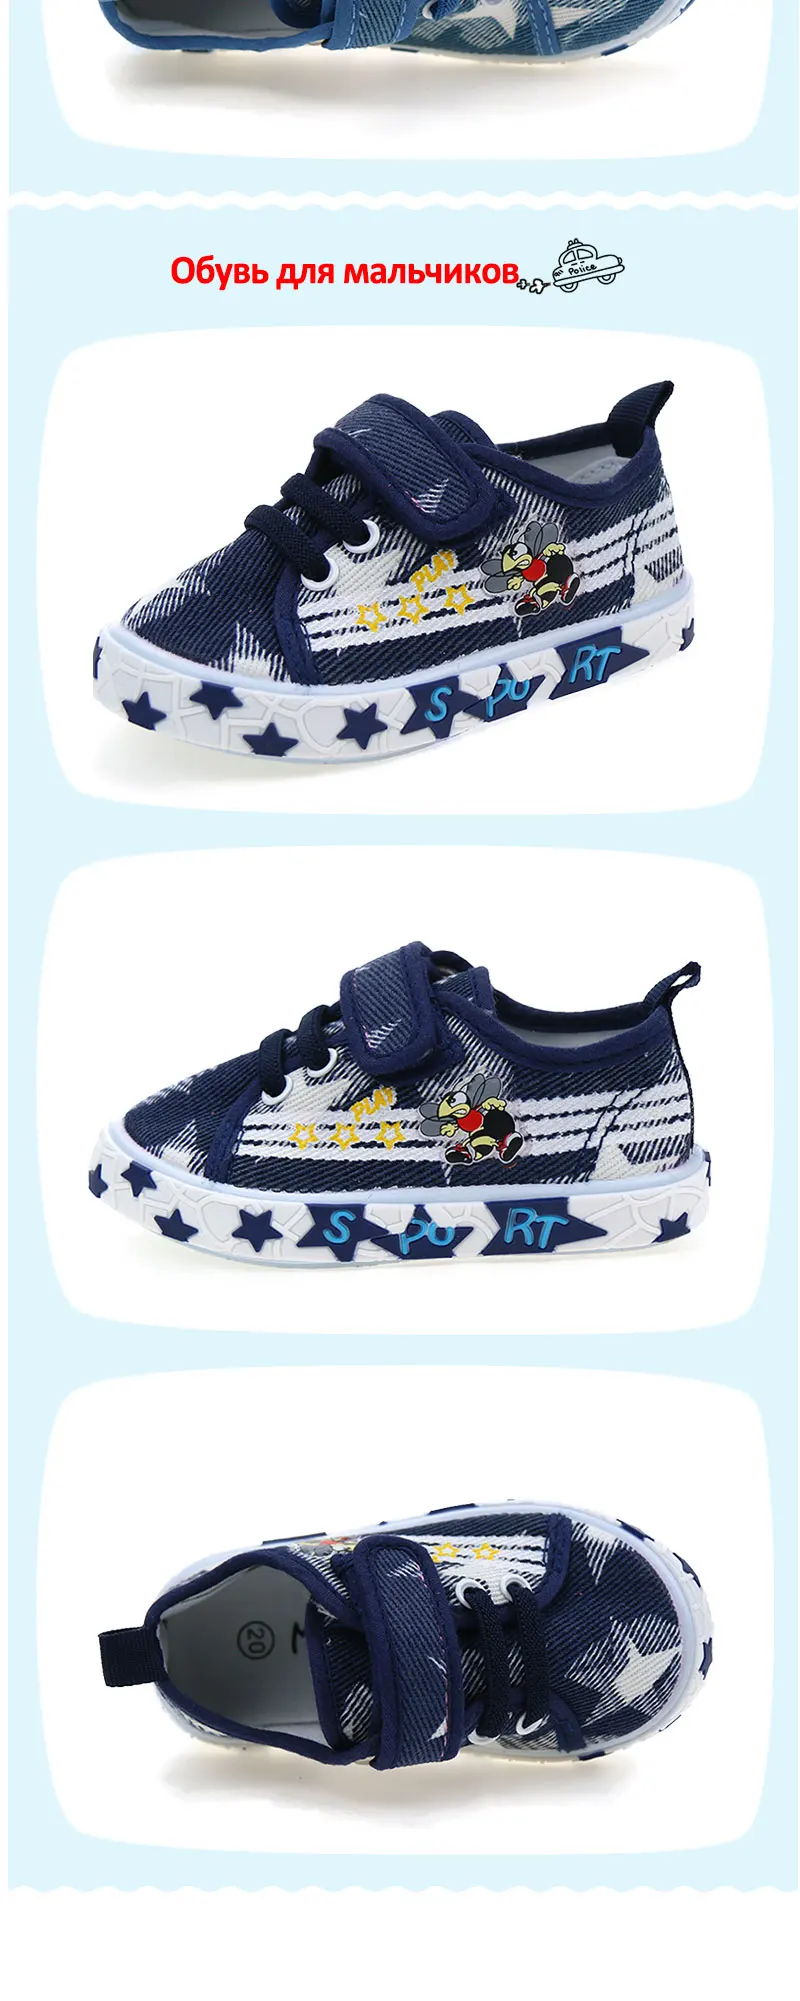 (Отправить от России) Mmnun 2018 Новое поступление детская Обувь для мальчиков Обувь обувь для детей спортивная обувь для Обувь для мальчиков